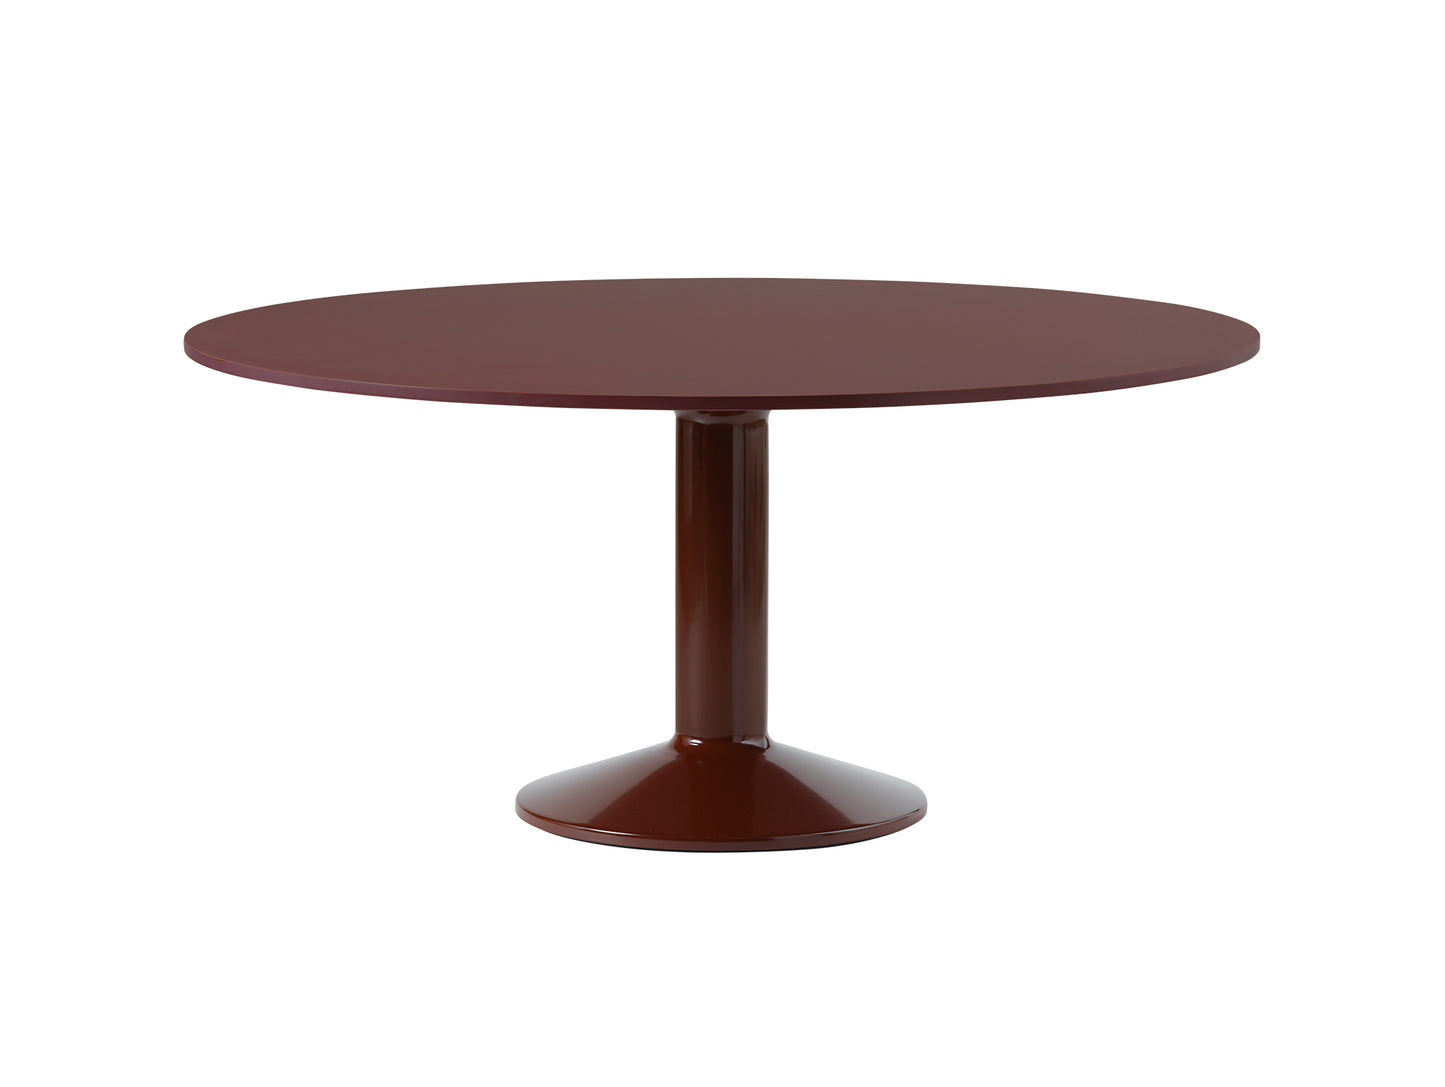 Midst Table by Muuto - Diameter: 160 cm / Dark Red Linoleum Tabletop / Dark Red Steel Base